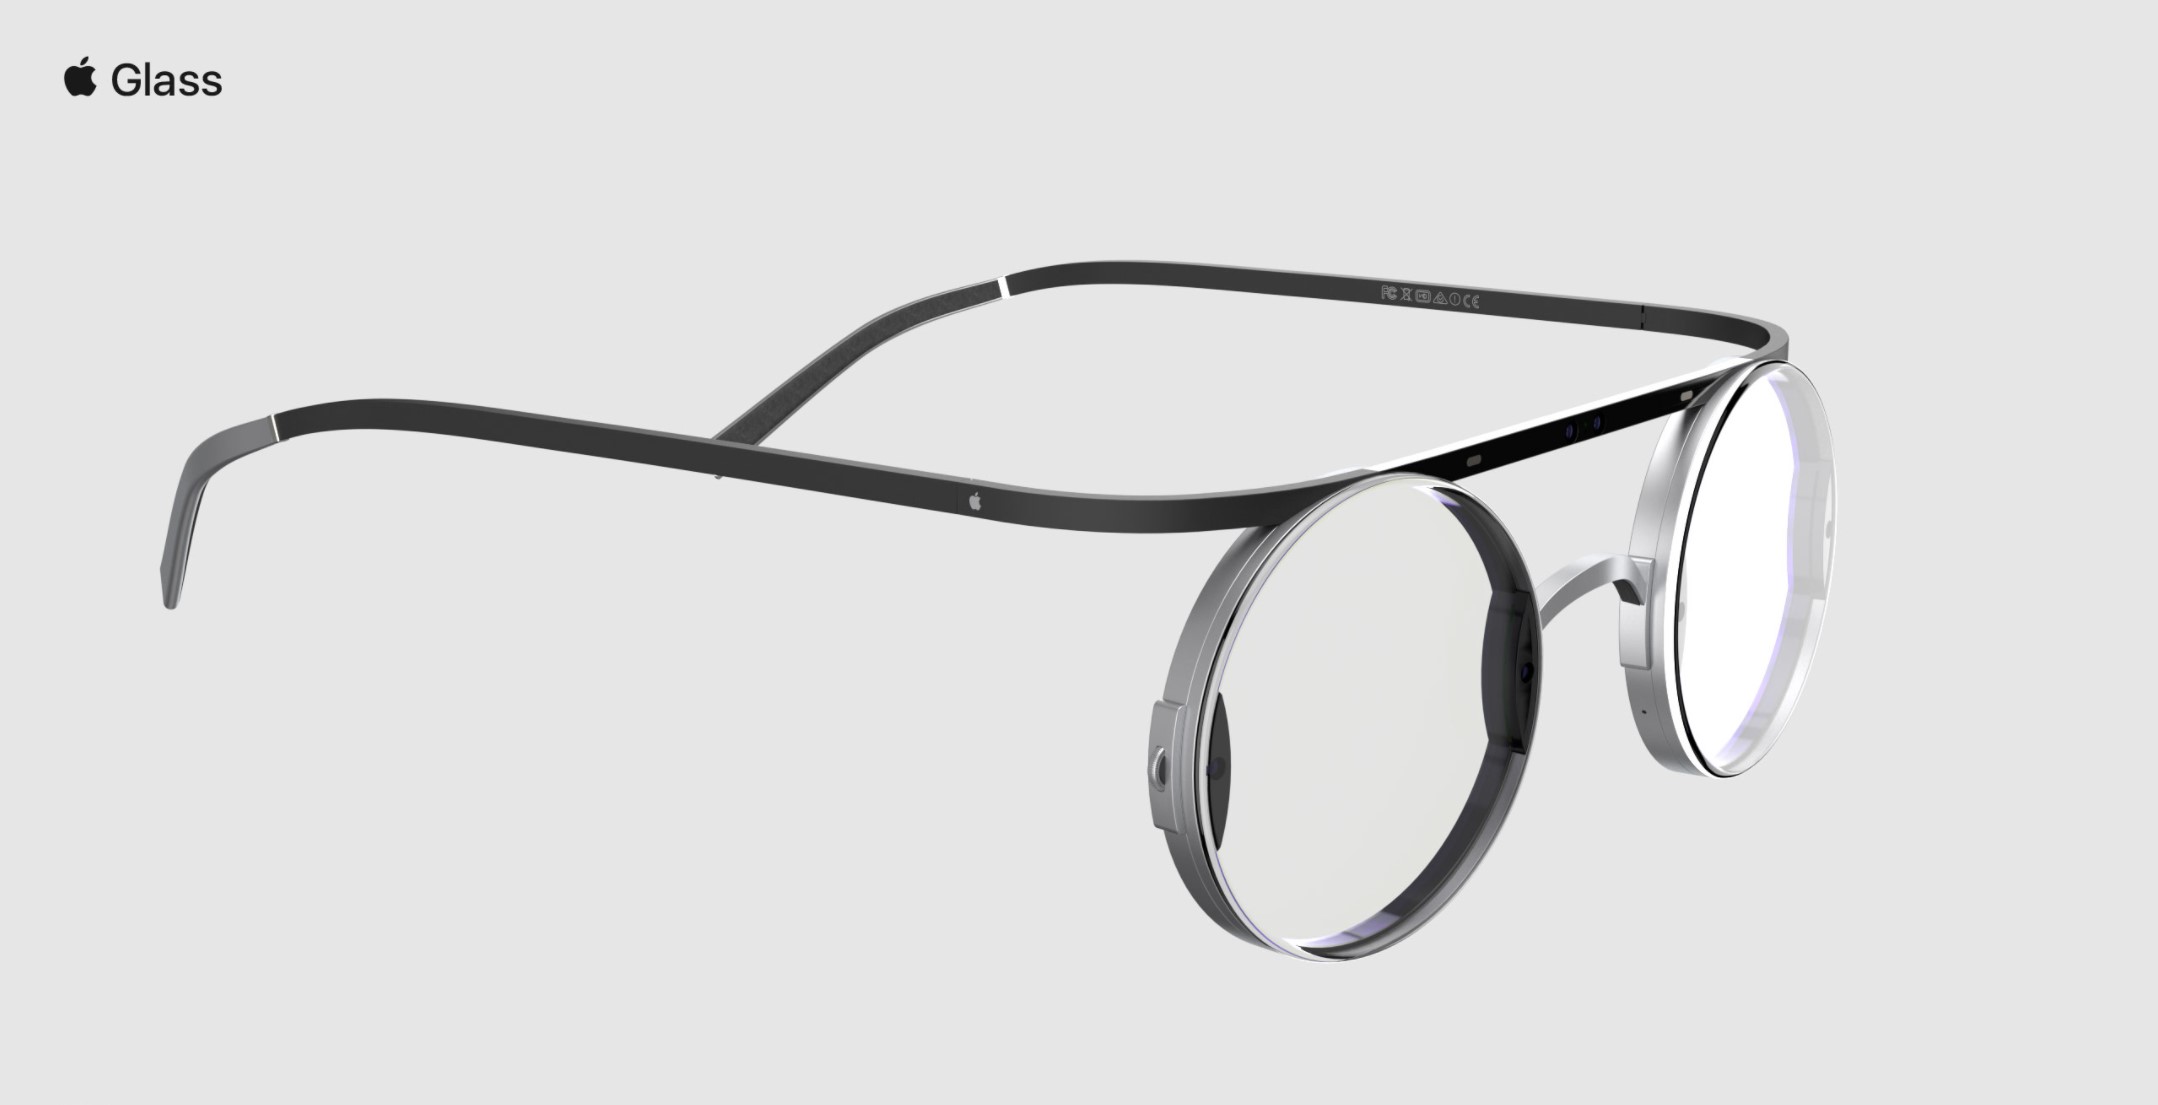 Retro AR-briller: Hommage til Steve Jobs - ITavisen